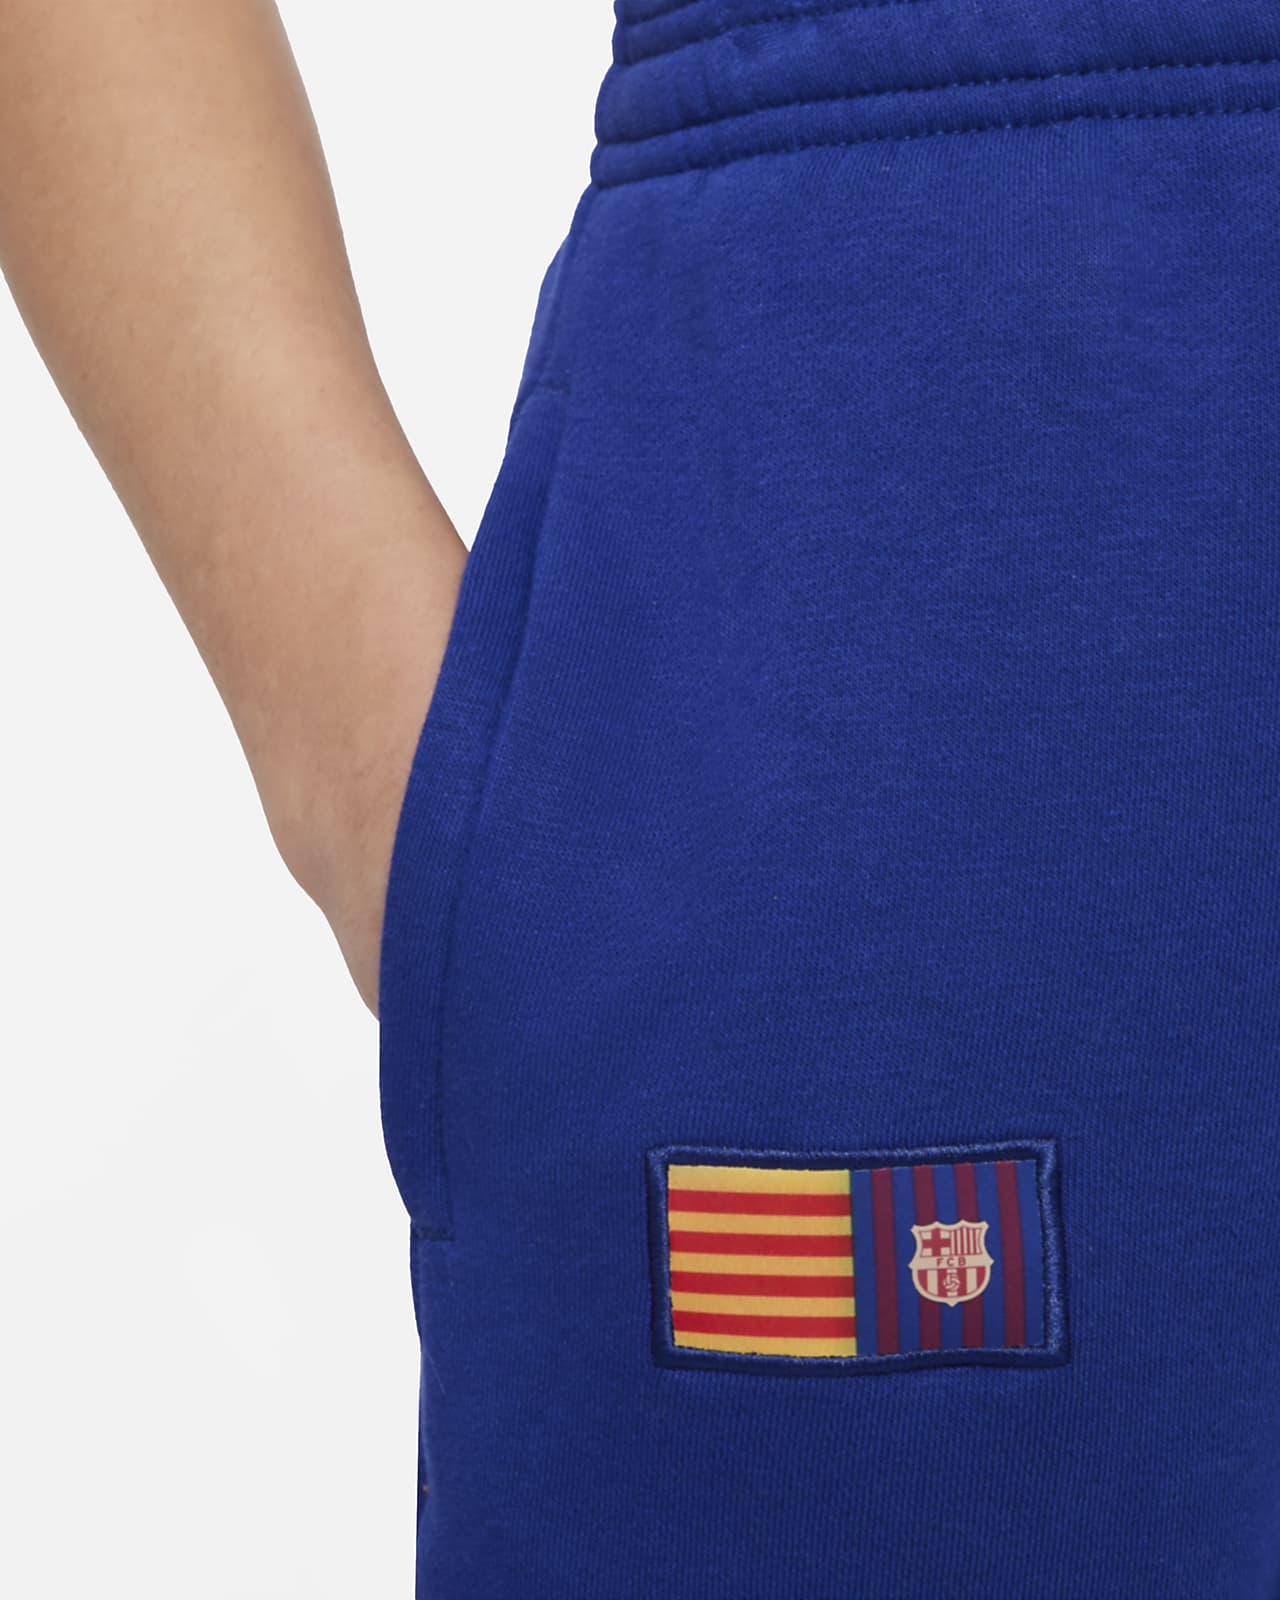 Barcelona Big Kids' Nike Soccer Fleece Pants